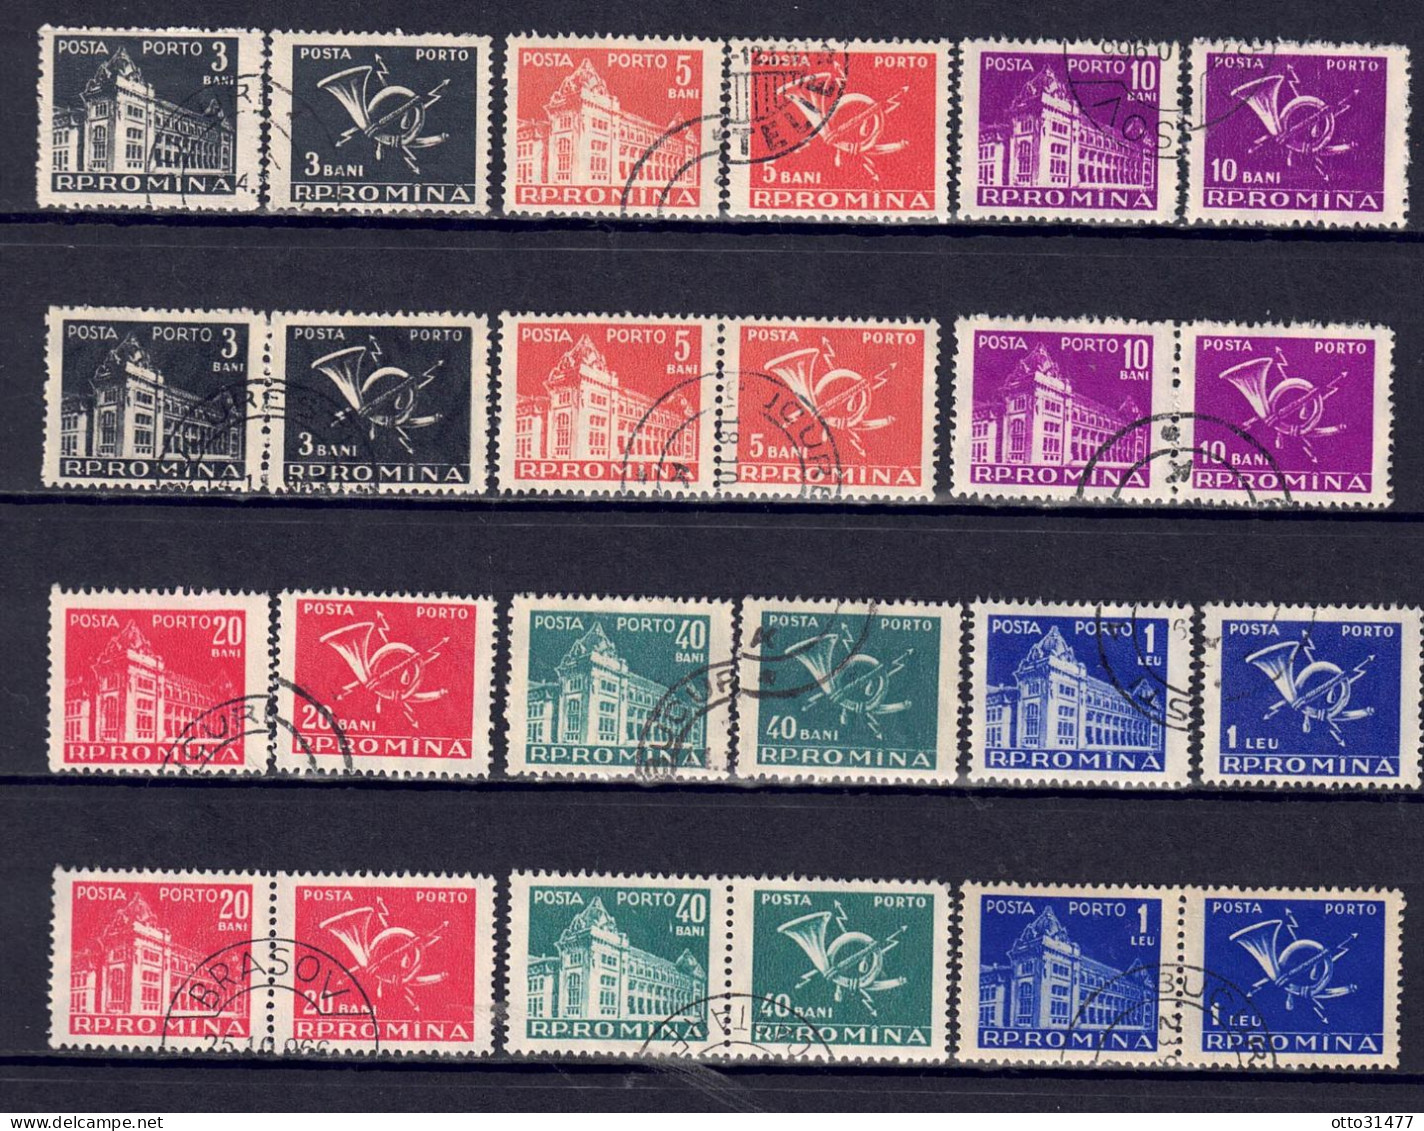 Rumänien 1957 - Portomarken, Nr. 101 - 106, Gestempelt / Used - Postage Due